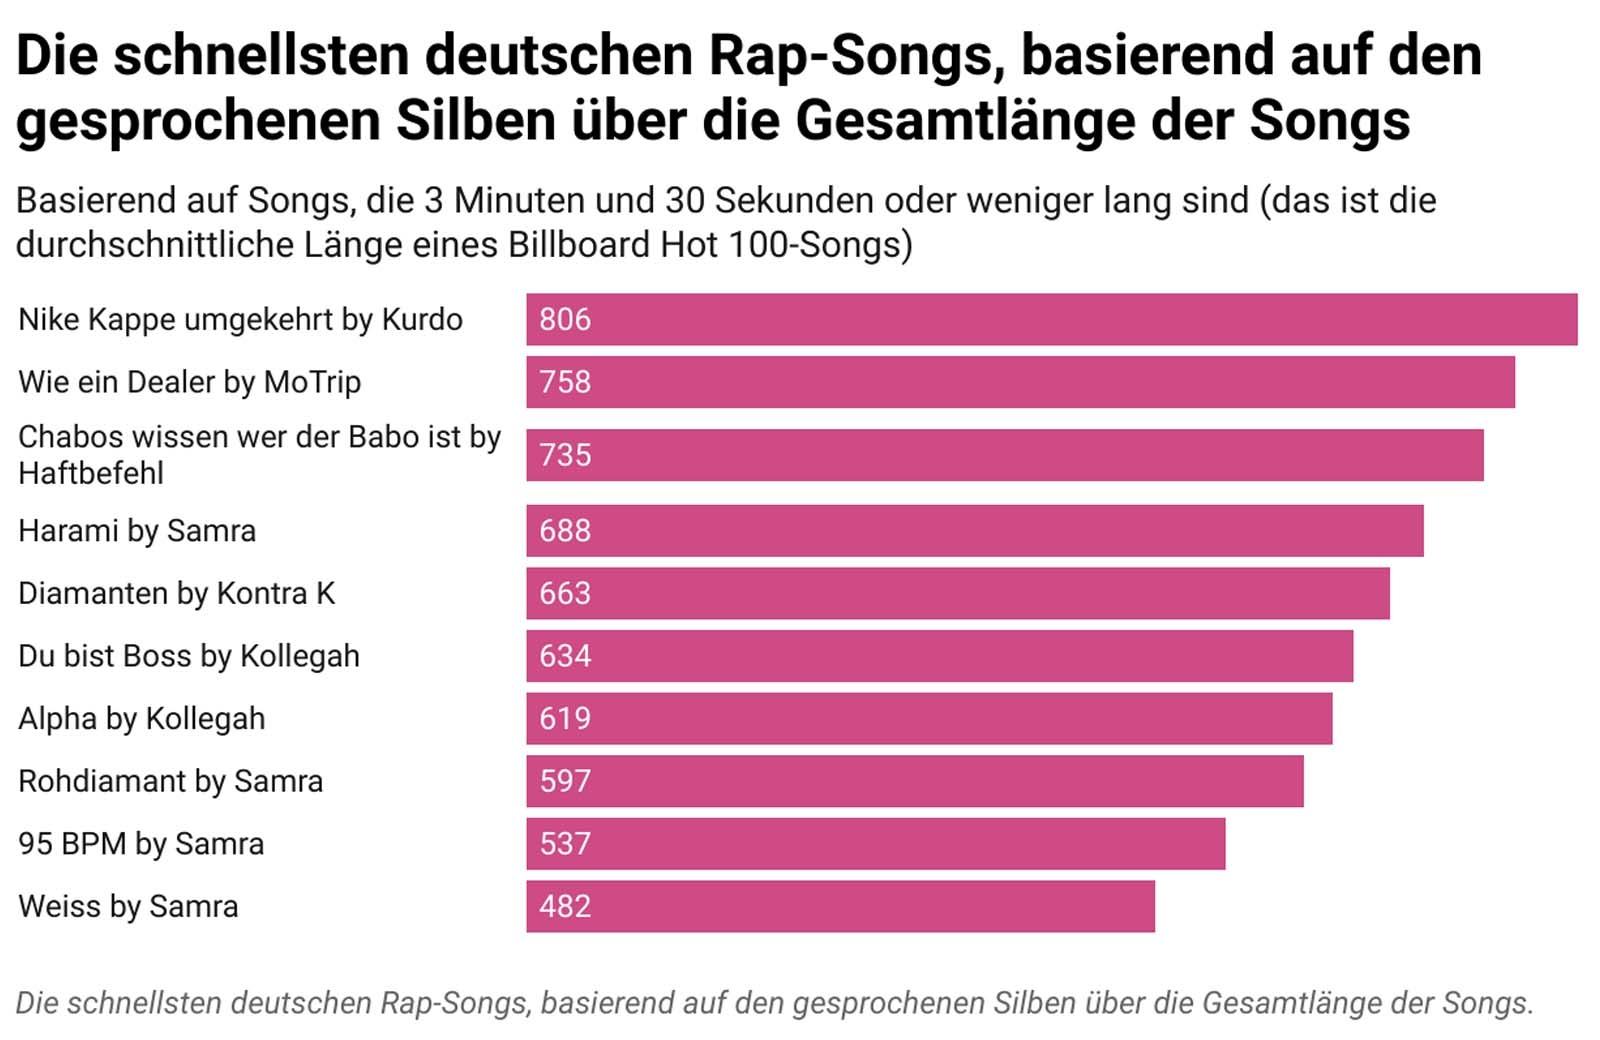 Grafik zu den schnellsten Deutschrap-Songs